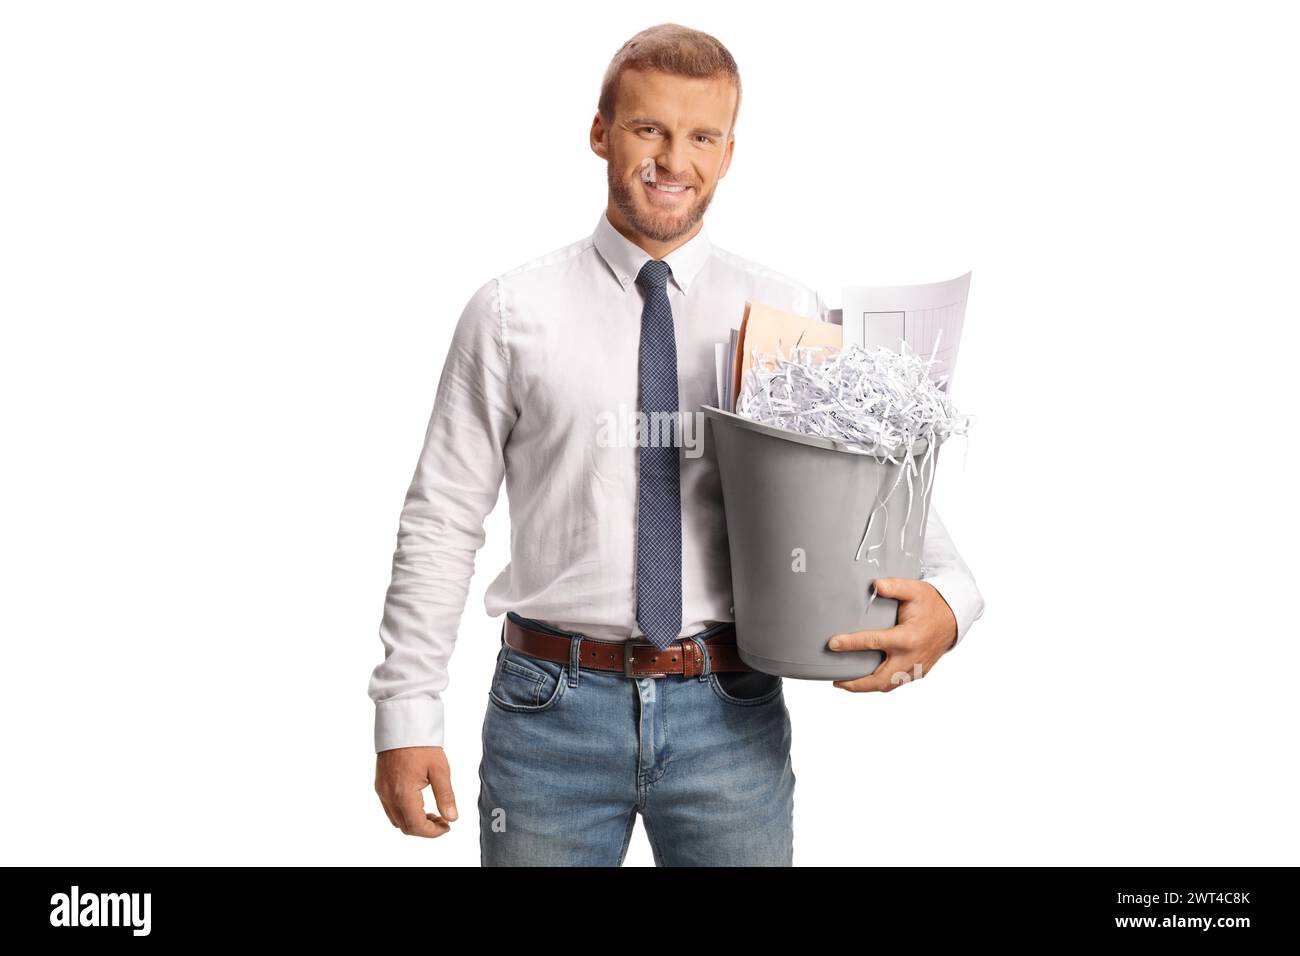 Impiegato che tiene in mano un contenitore con rifiuti di carta isolati su sfondo bianco Foto Stock